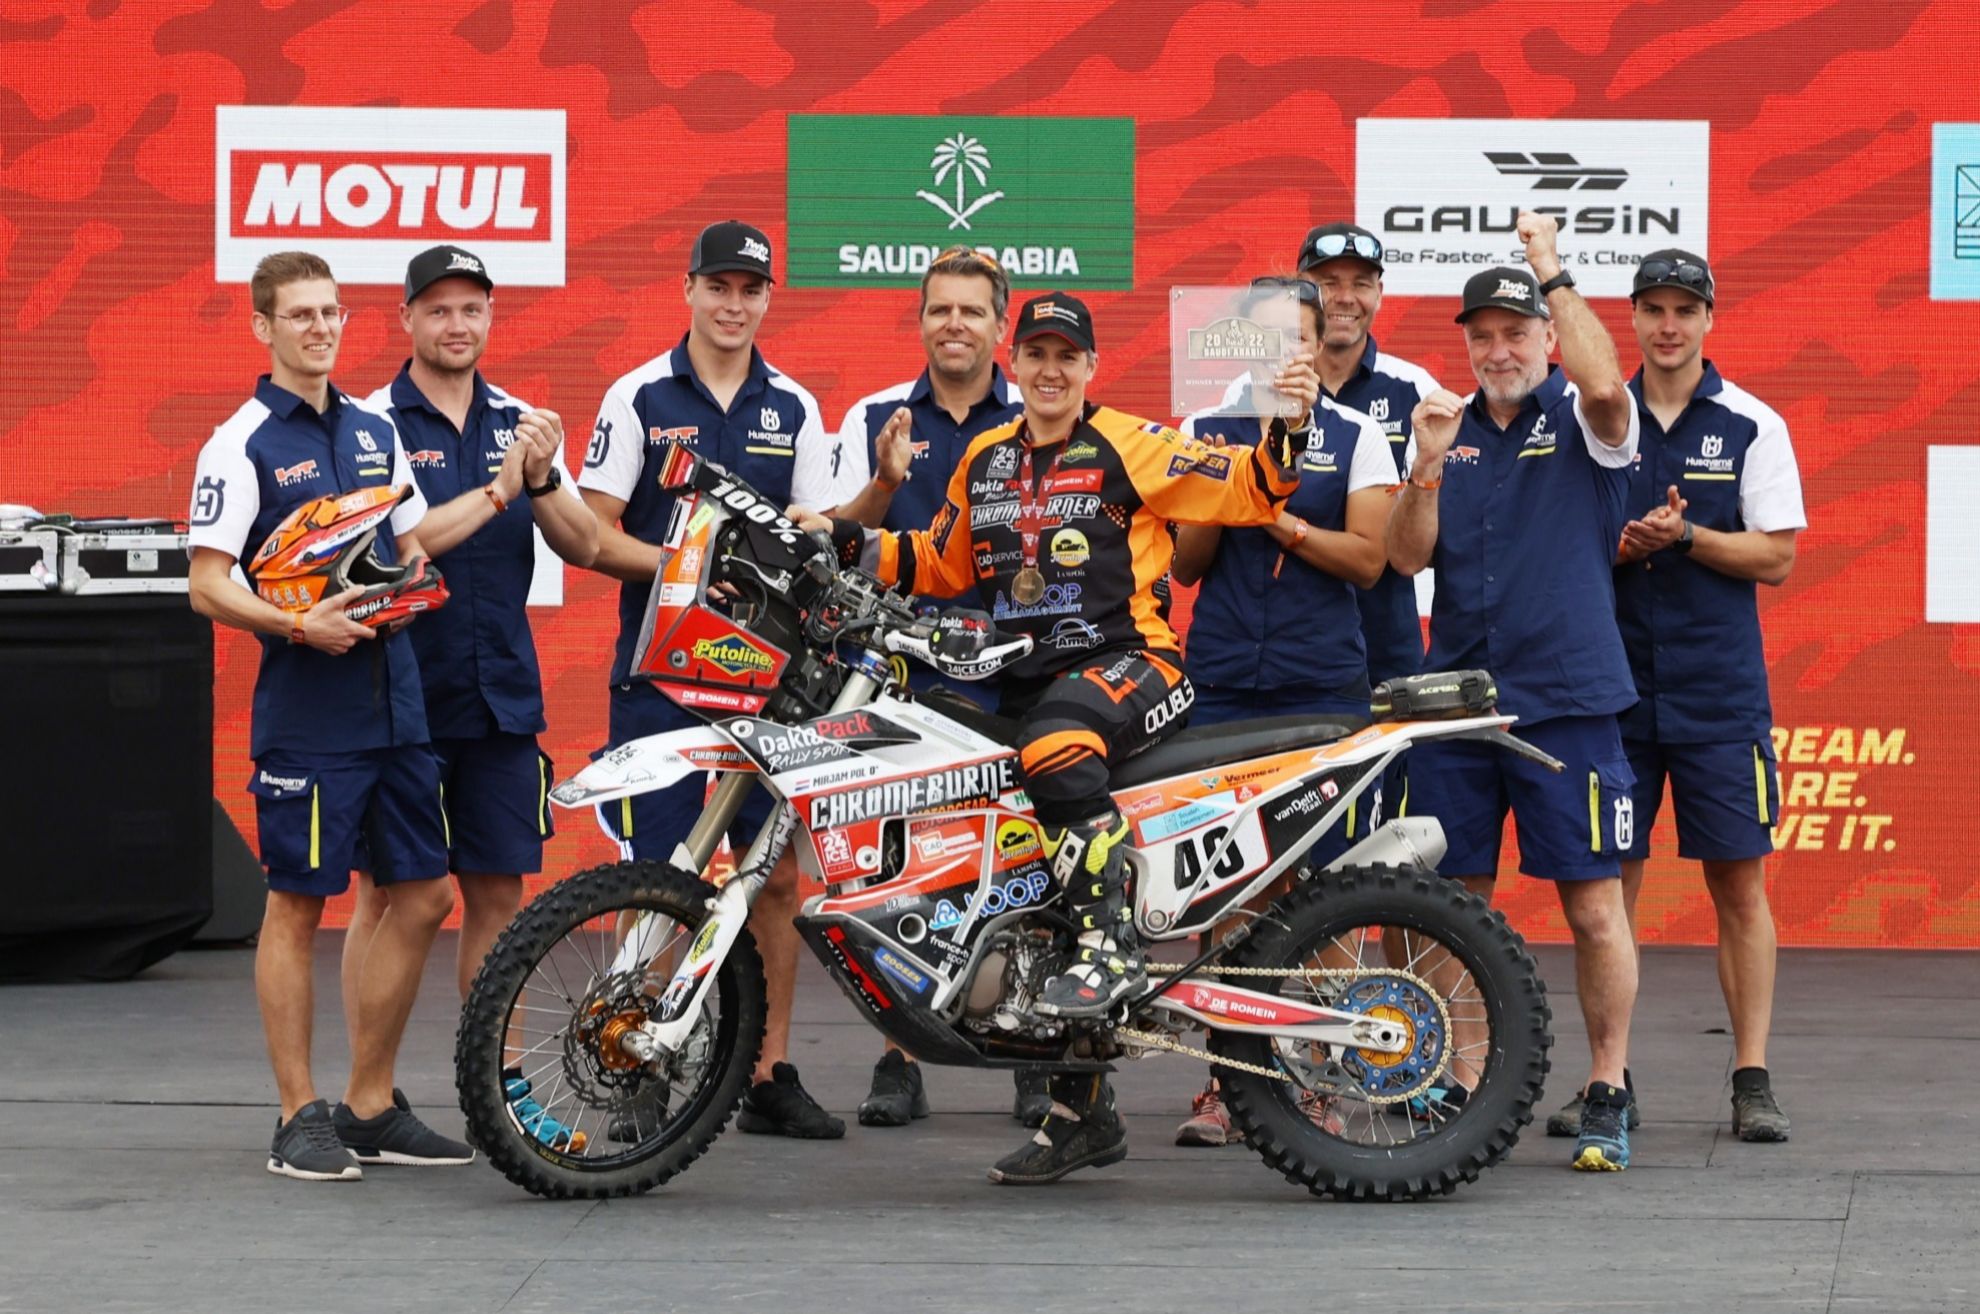 Dakar 2022 - todos los ganadores - Mirjan Pol - categoria femenina - podio - resultados - clasificacion - Gerard Farres